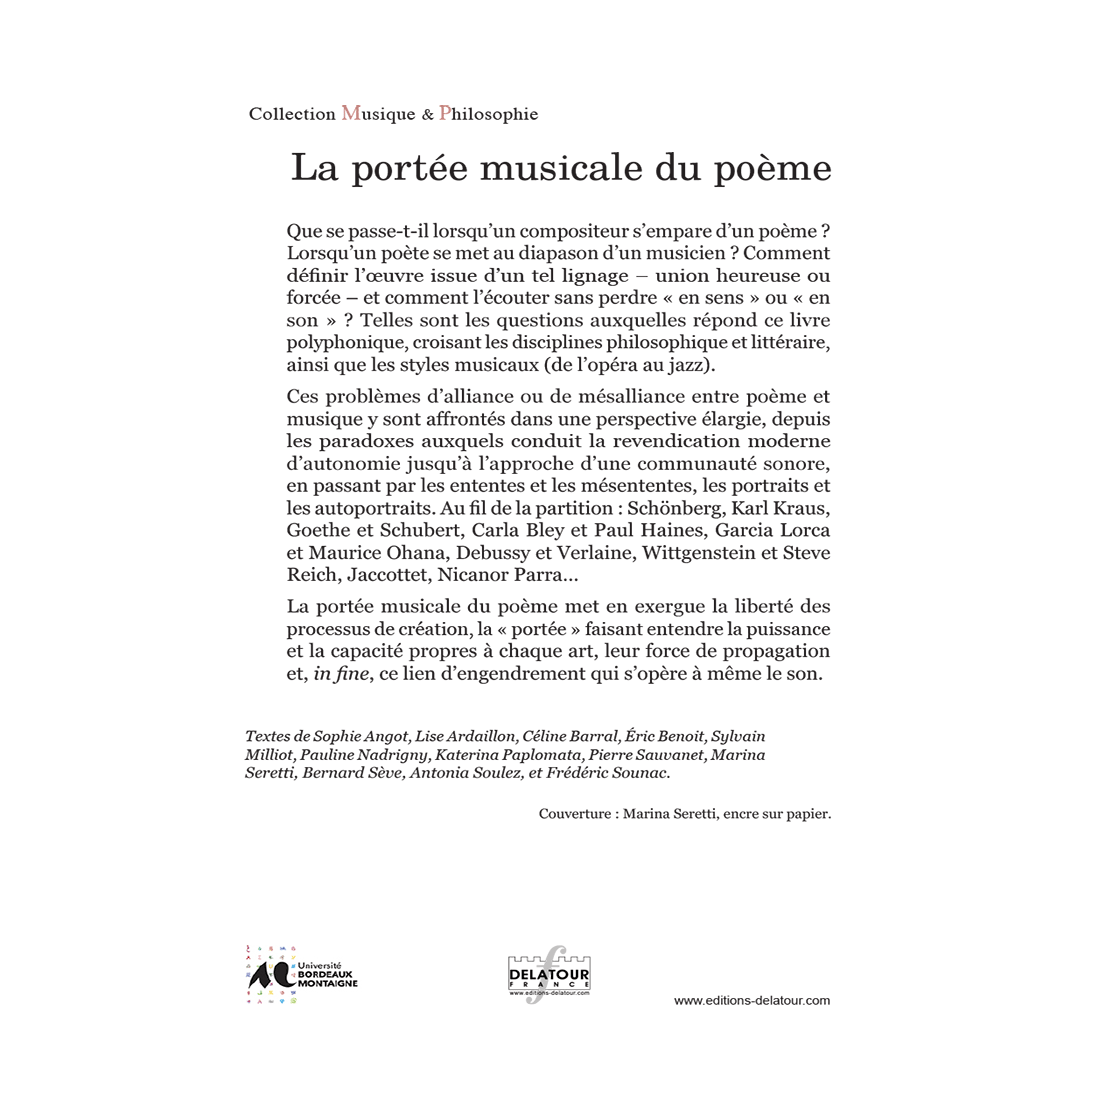 La portée musicale du poème - E-book PDF (dos couverture)